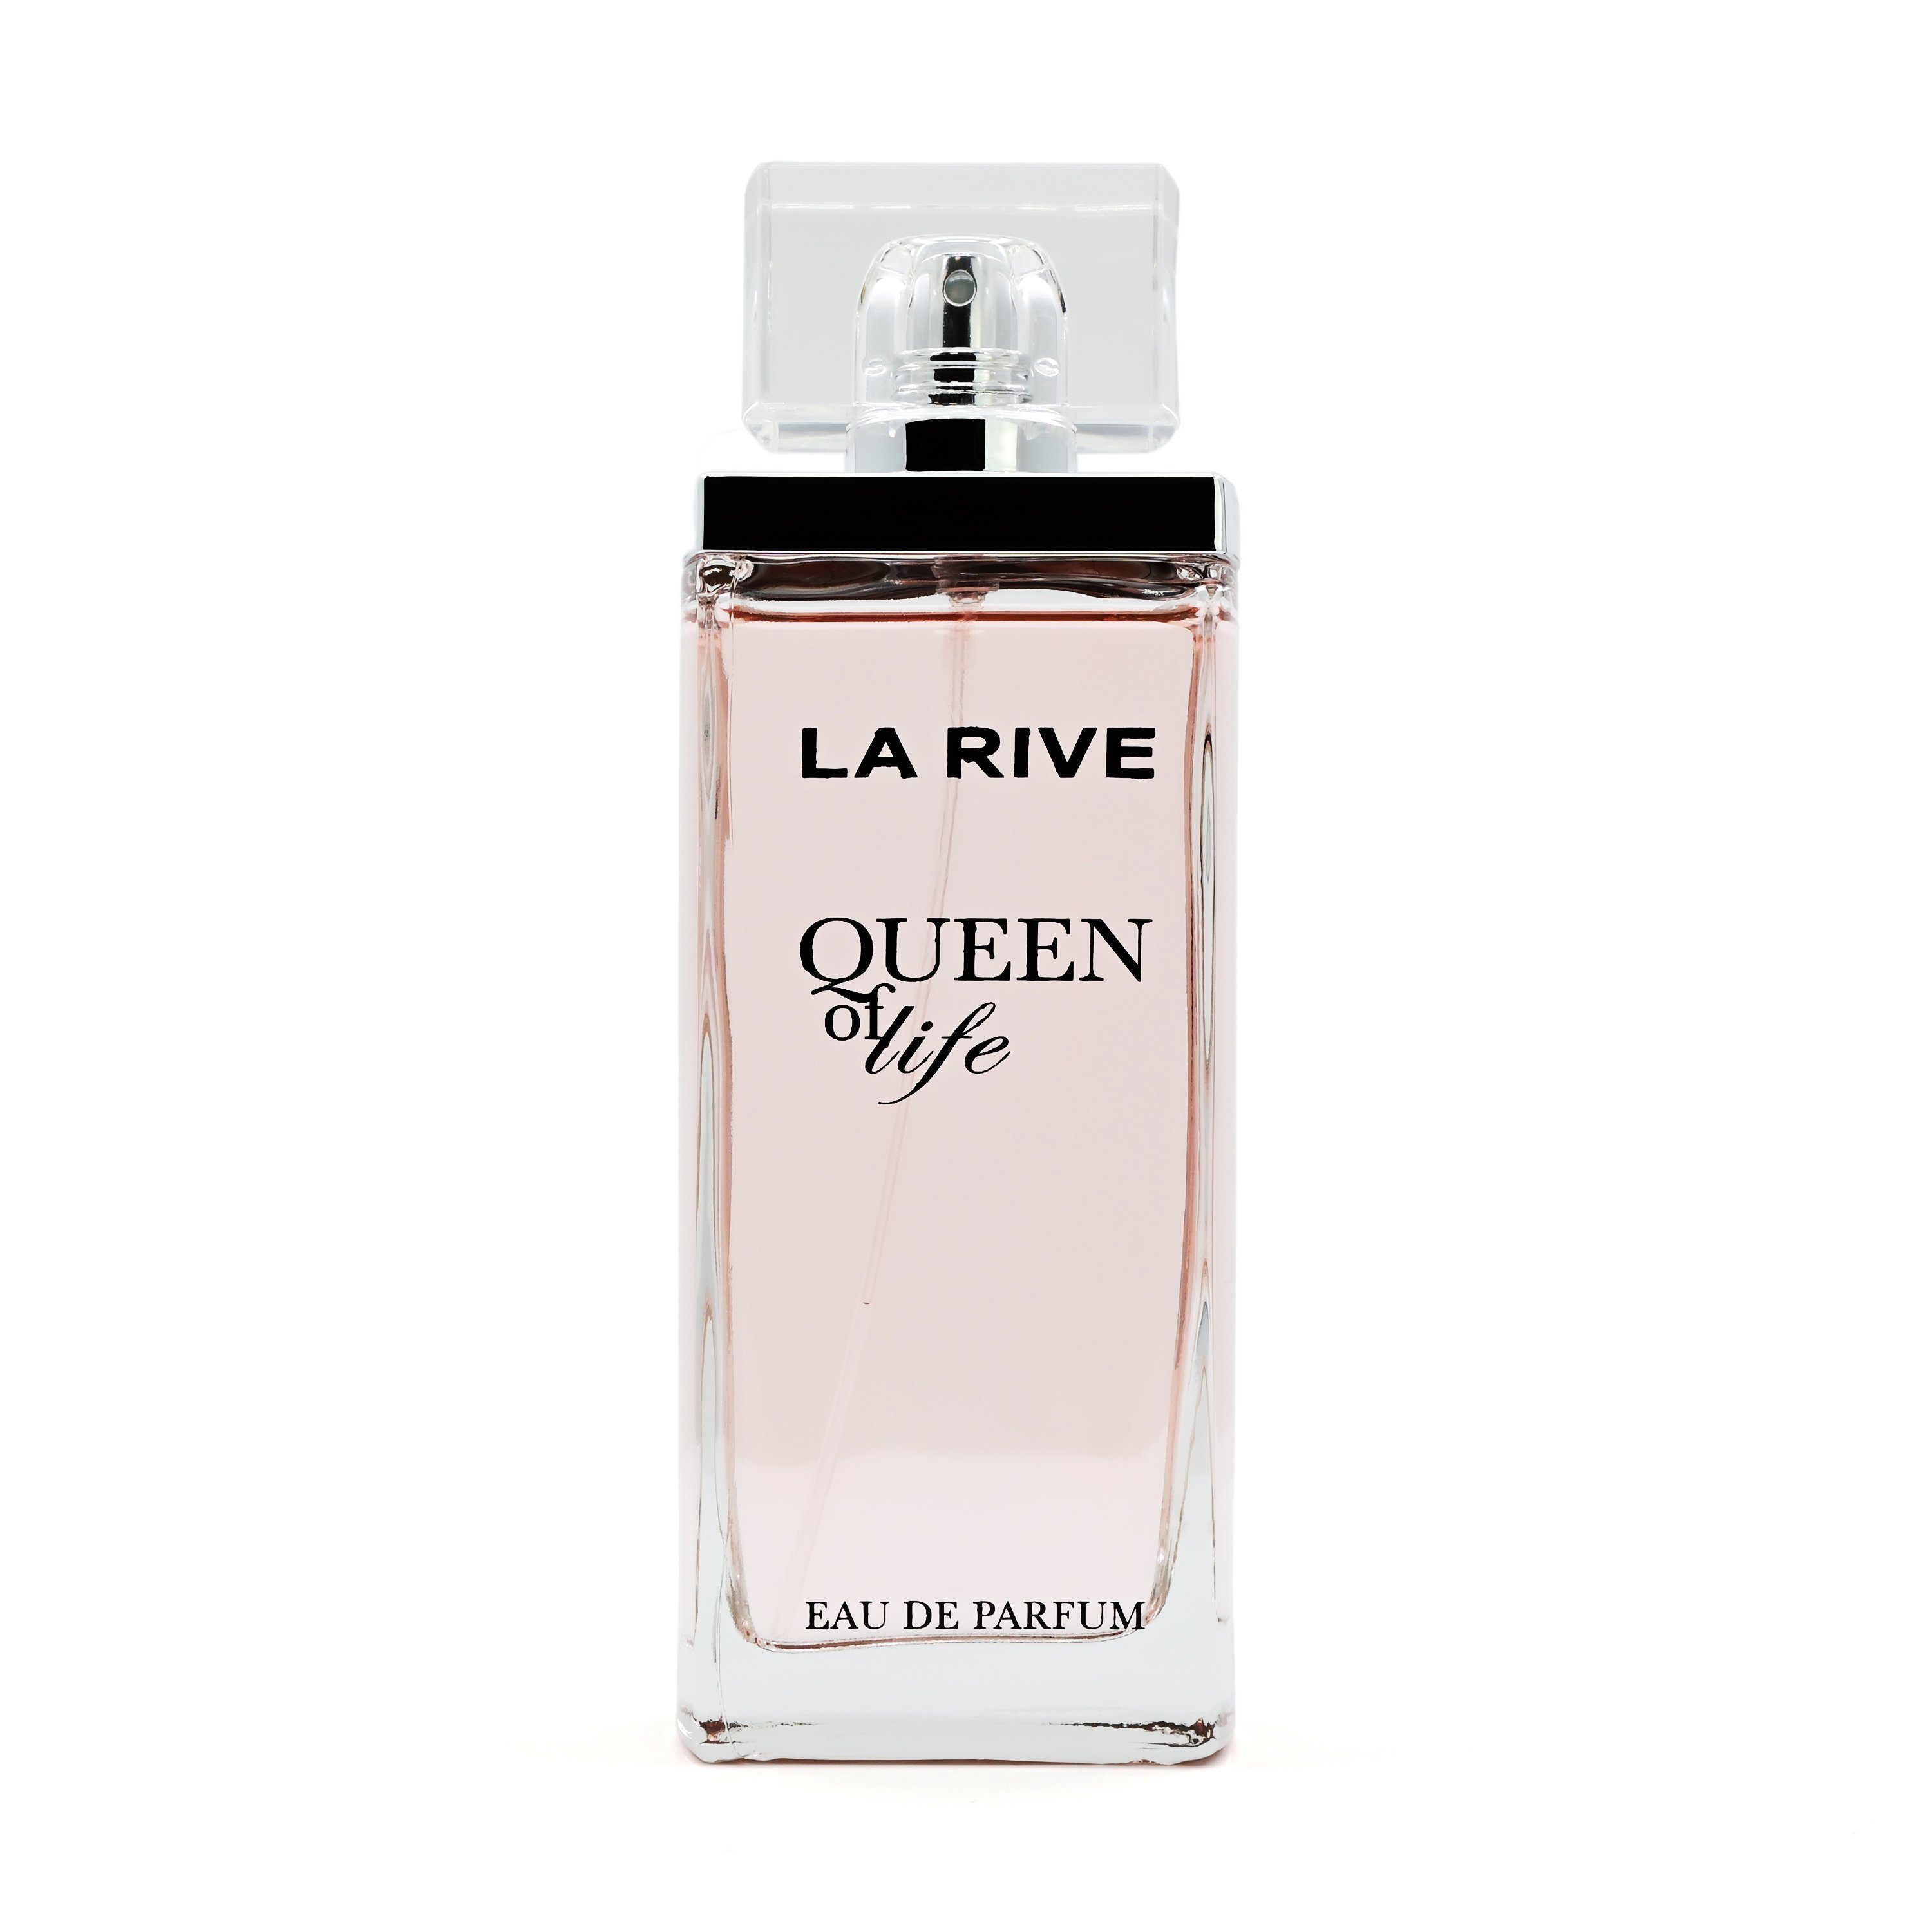 Rive Eau - RIVE de ml Life LA Queen Eau Parfum La Parfum de of 75 -